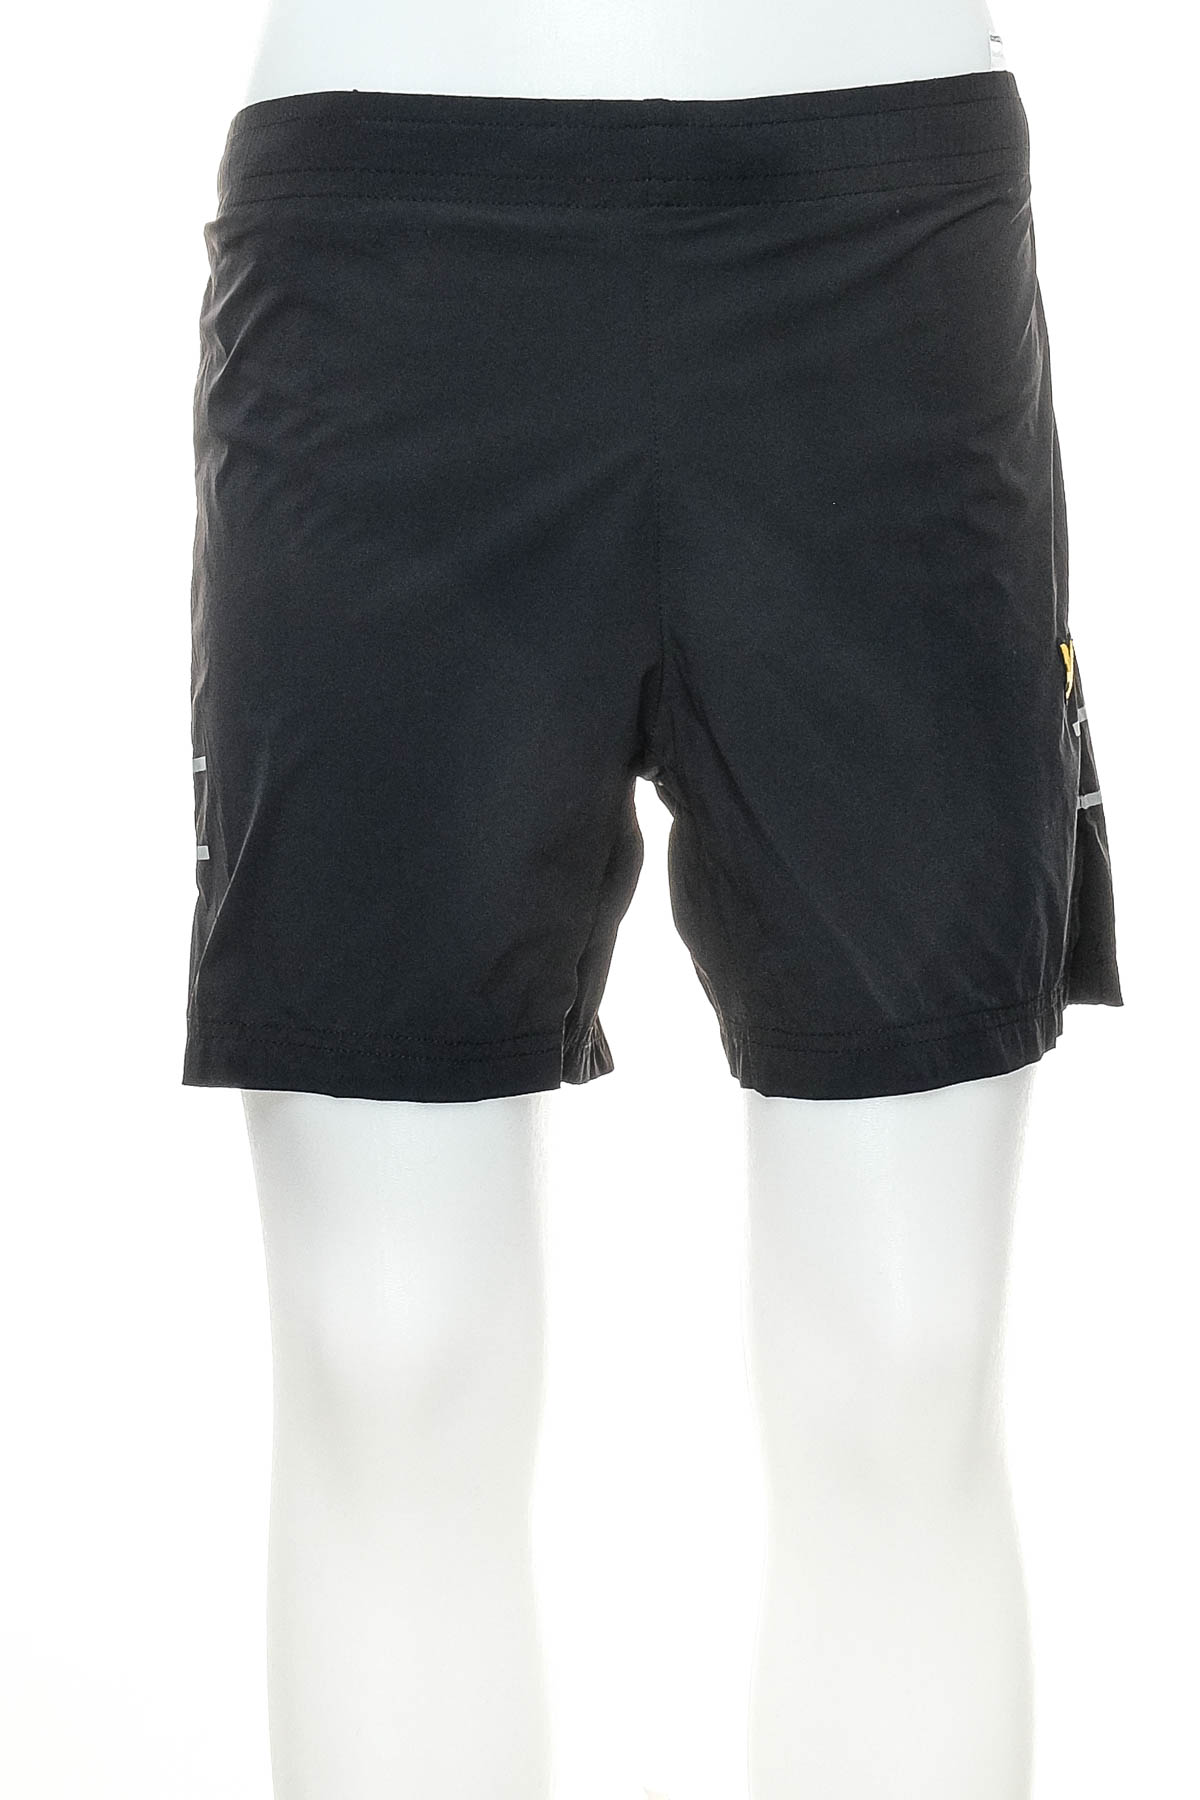 Men's shorts - Lyle & Scott - 0